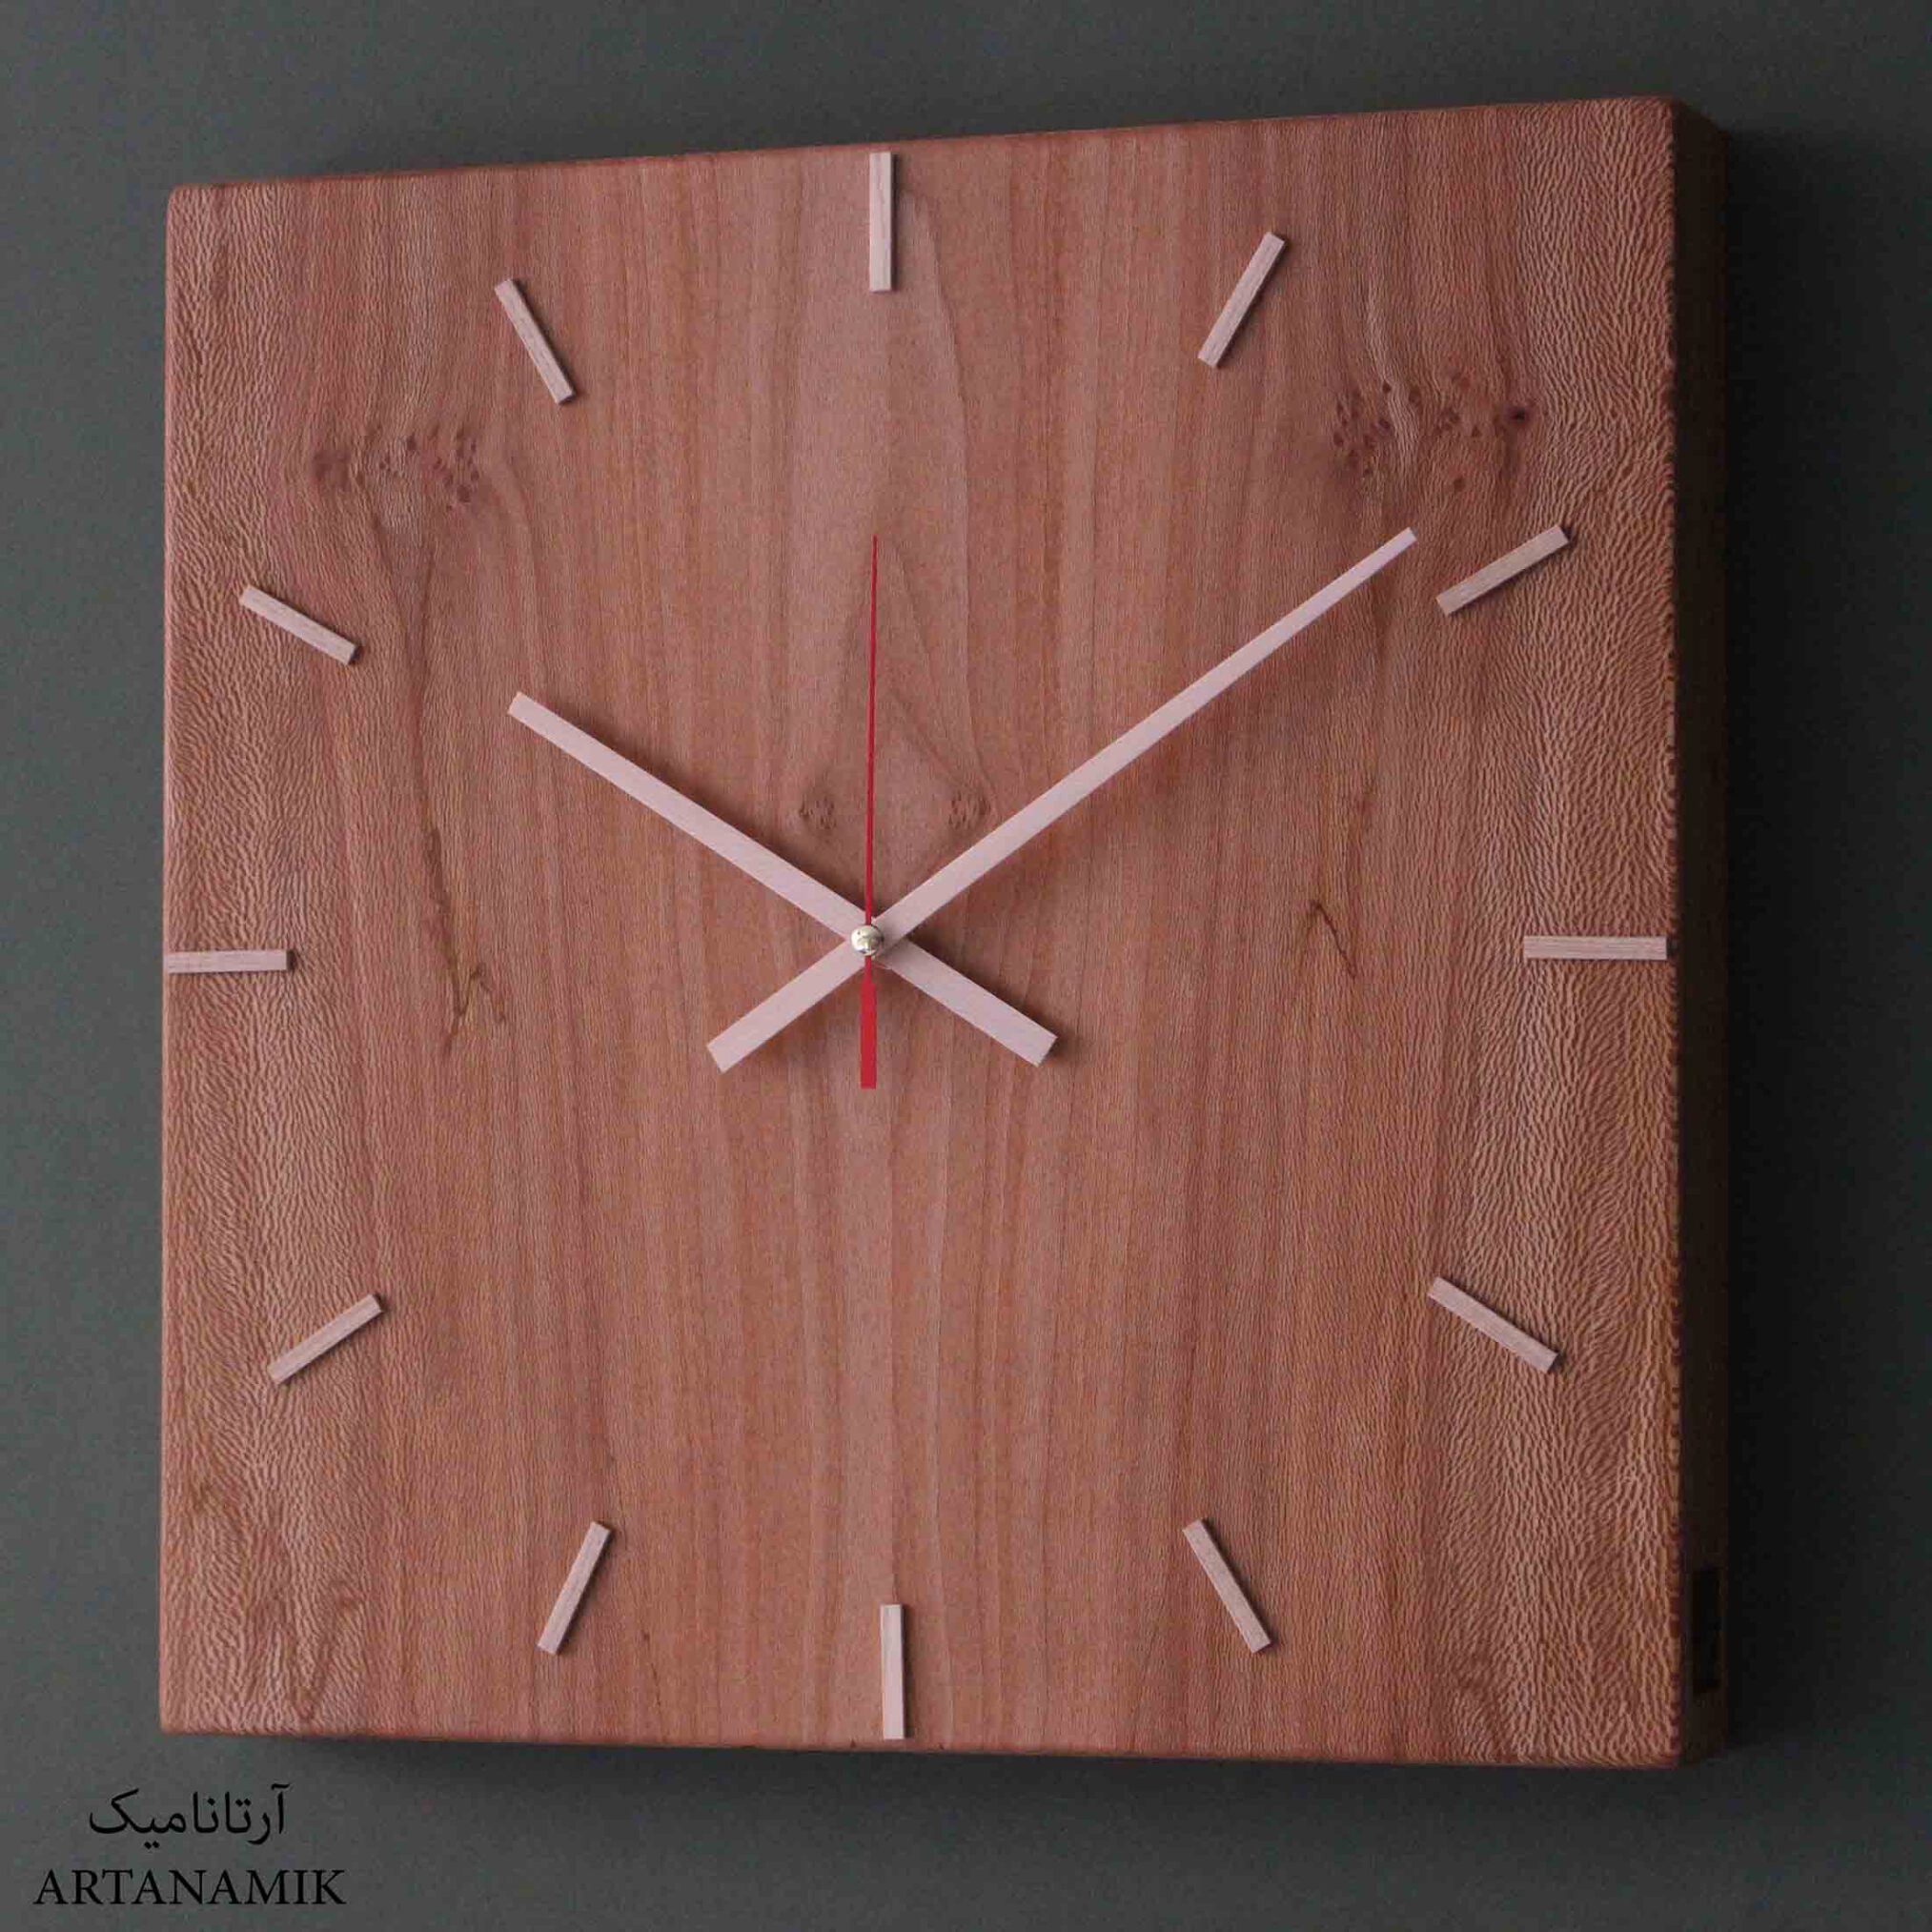  ساعت دیواری چوبی با کیفیت 